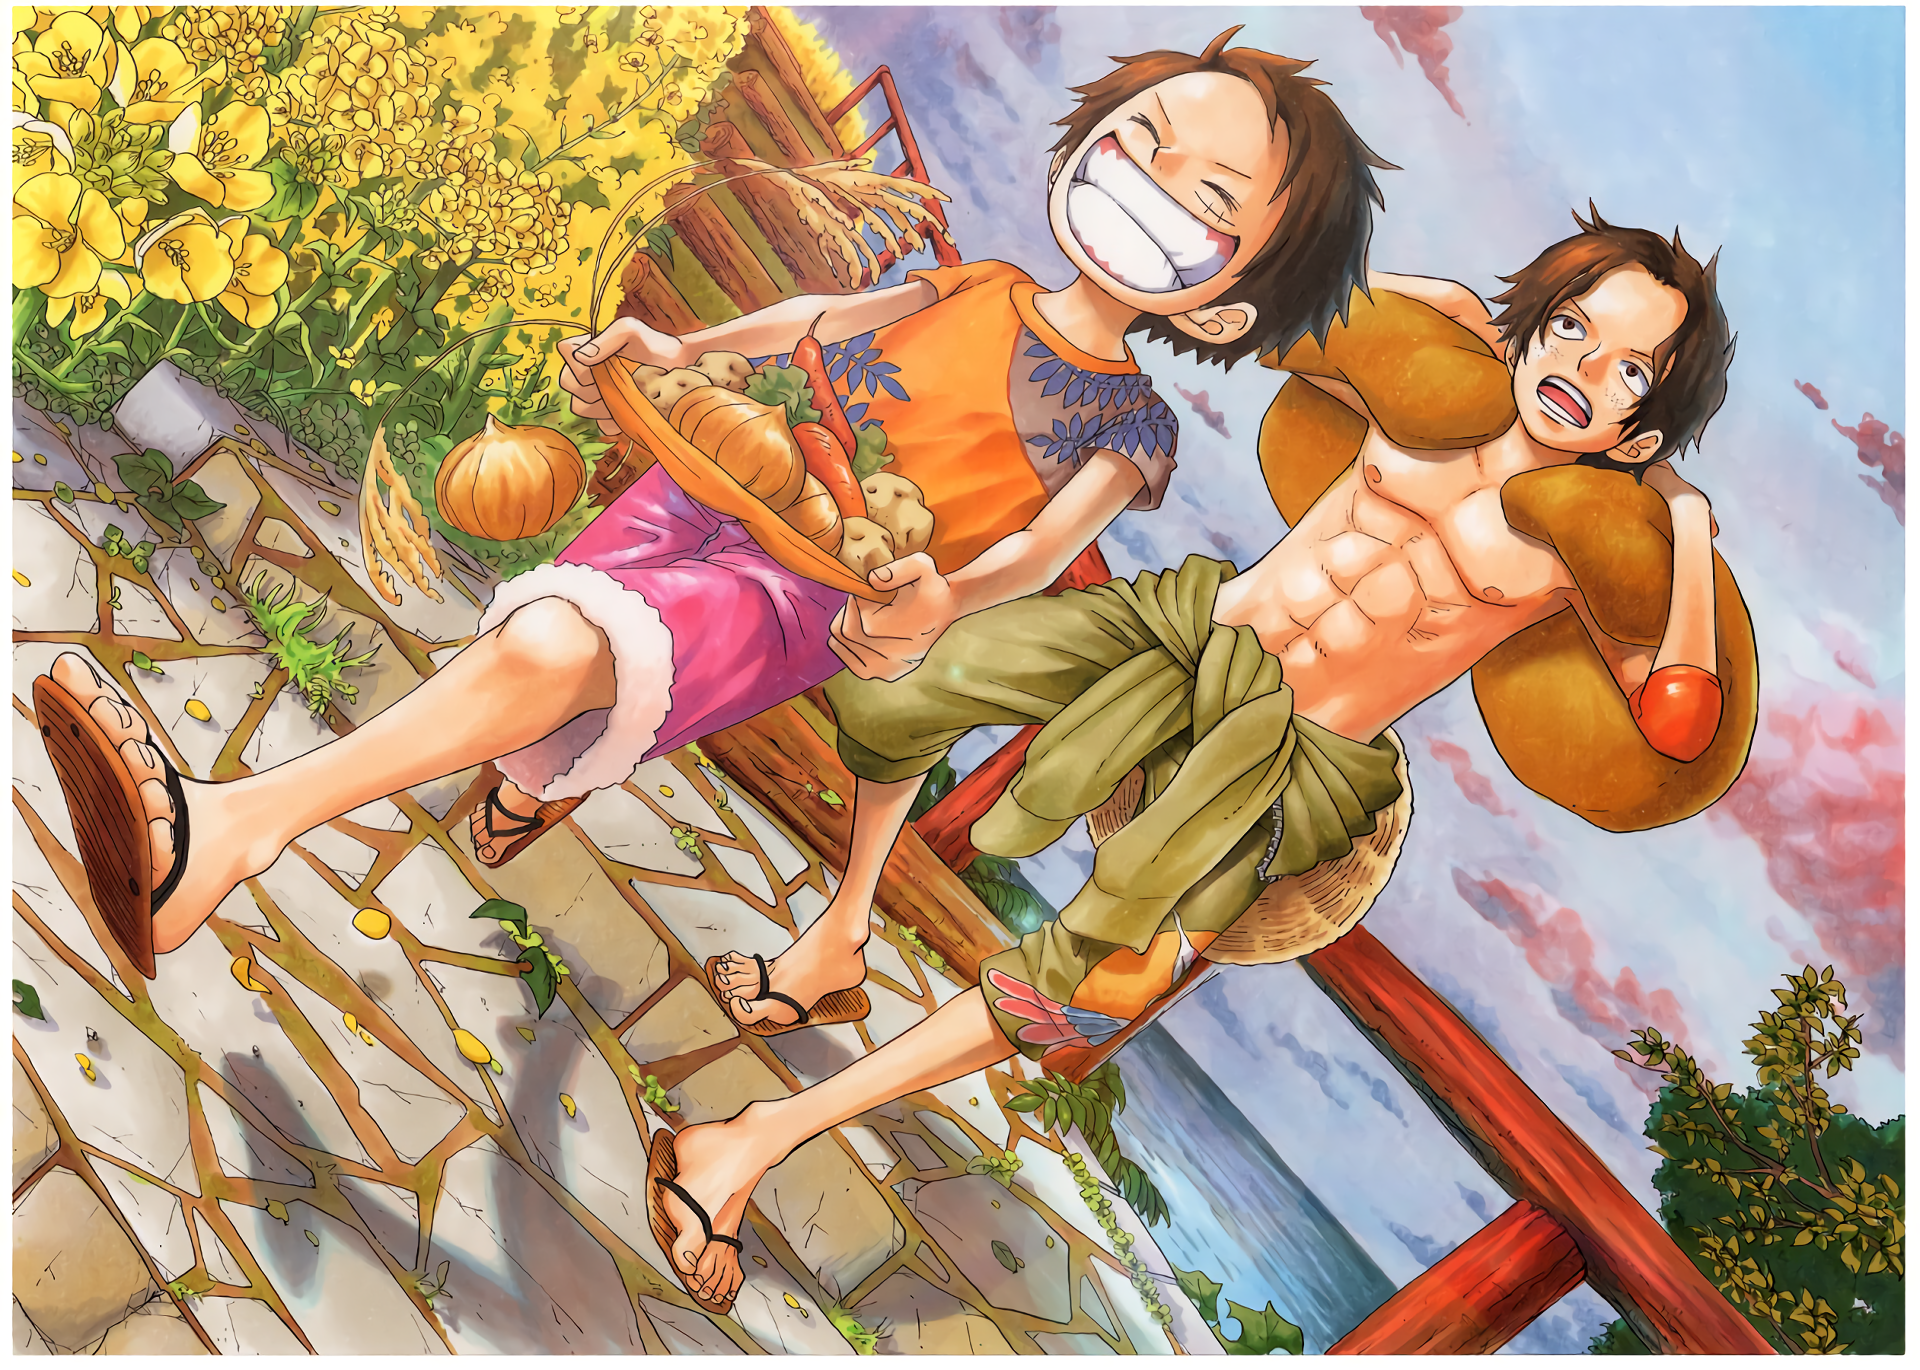 Được ví như một trong những bộ anime đình đám nhất mọi thời đại, One Piece sẽ mang đến cho bạn những phút giây thú vị và kích thích. Những nhân vật ngộ nghĩnh và lối dẫn chuyện lôi cuốn khán giả. Nếu bạn cũng là fan của One Piece, hãy xem ngay bộ ảnh về anime này, giúp bạn đắm chìm trong thế giới huyền thoại này.